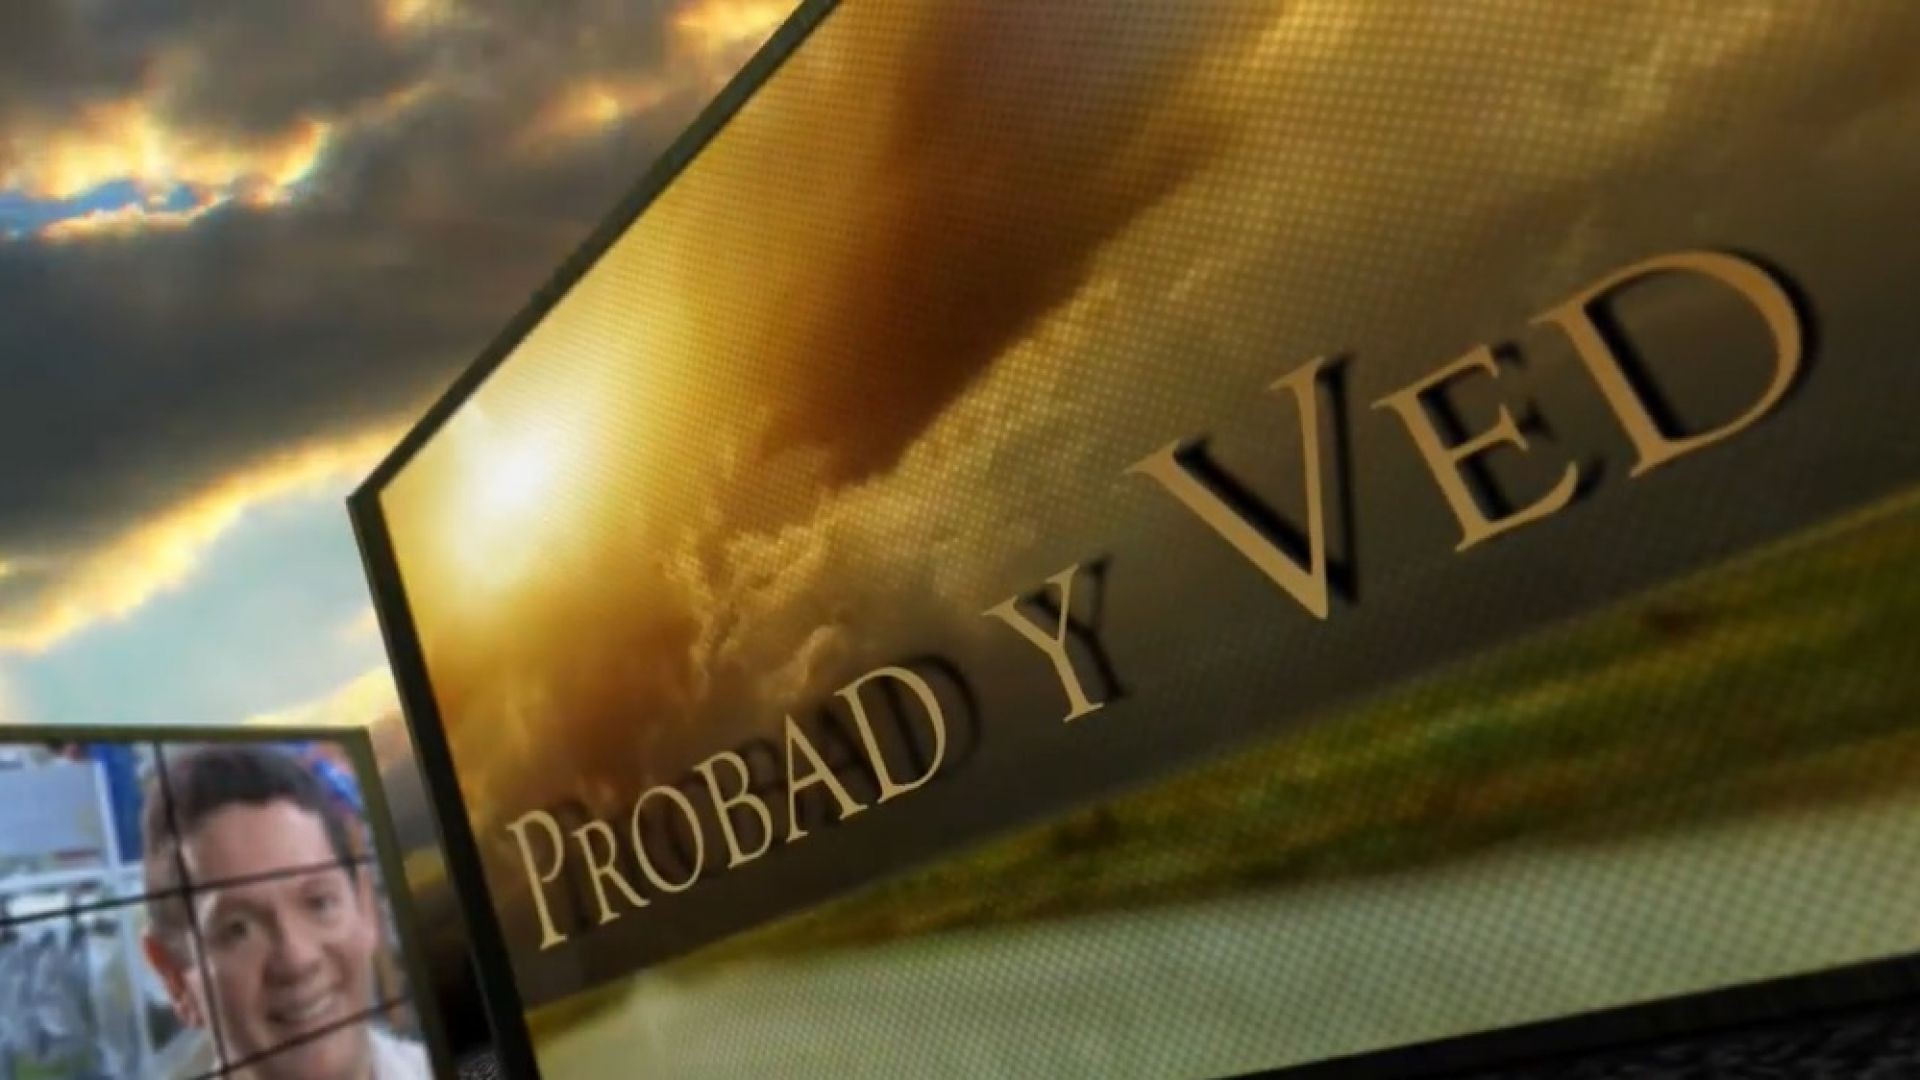 Probad y Ved 2013 - Dios protege un campo - 26/Ene